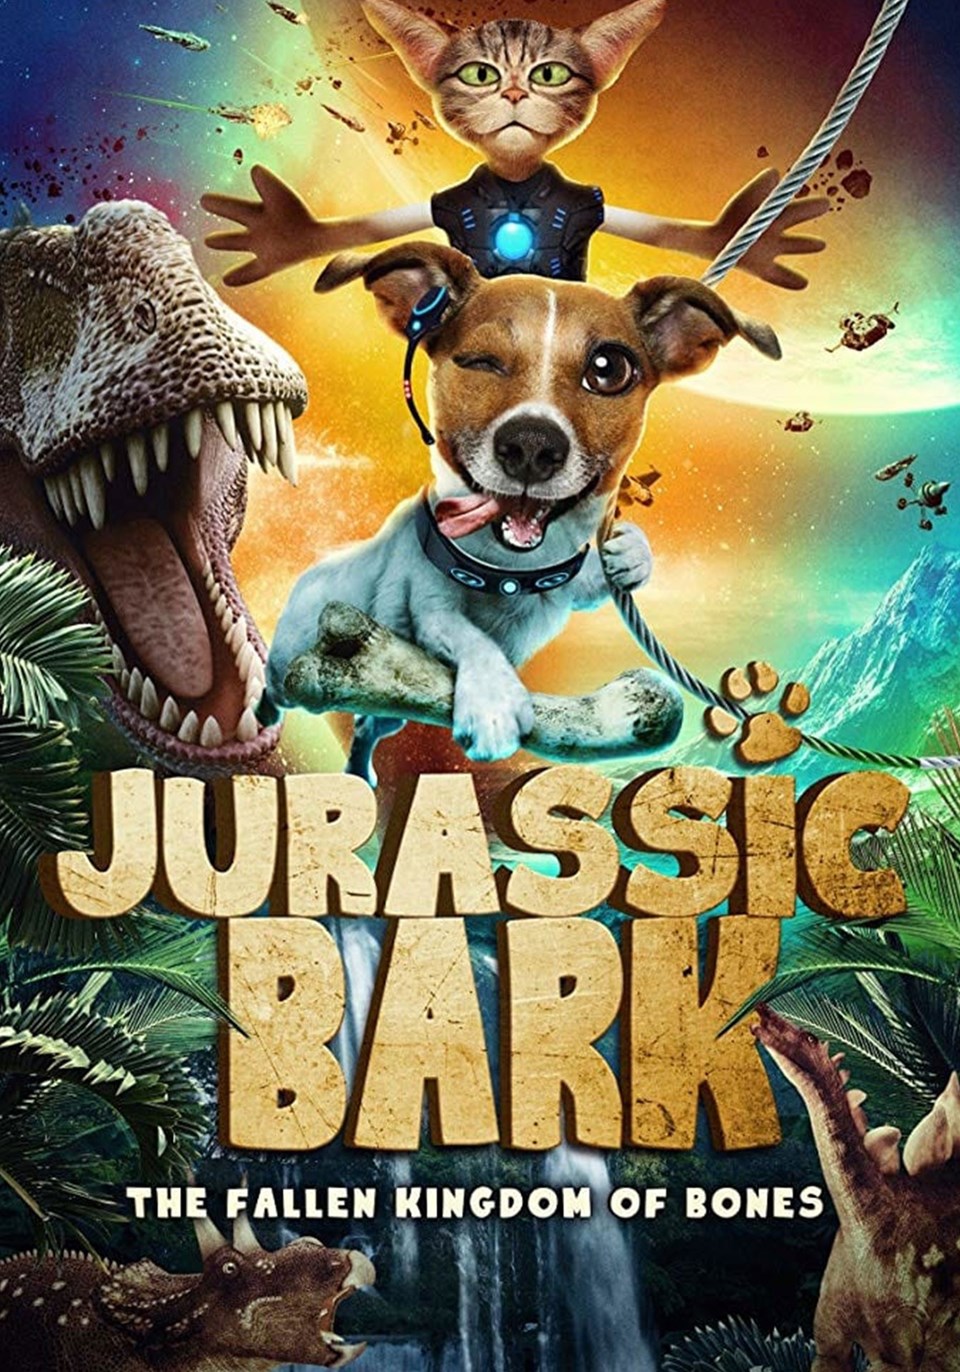 puhutv'den günün filmi: Jurassic Hayvanları - 1